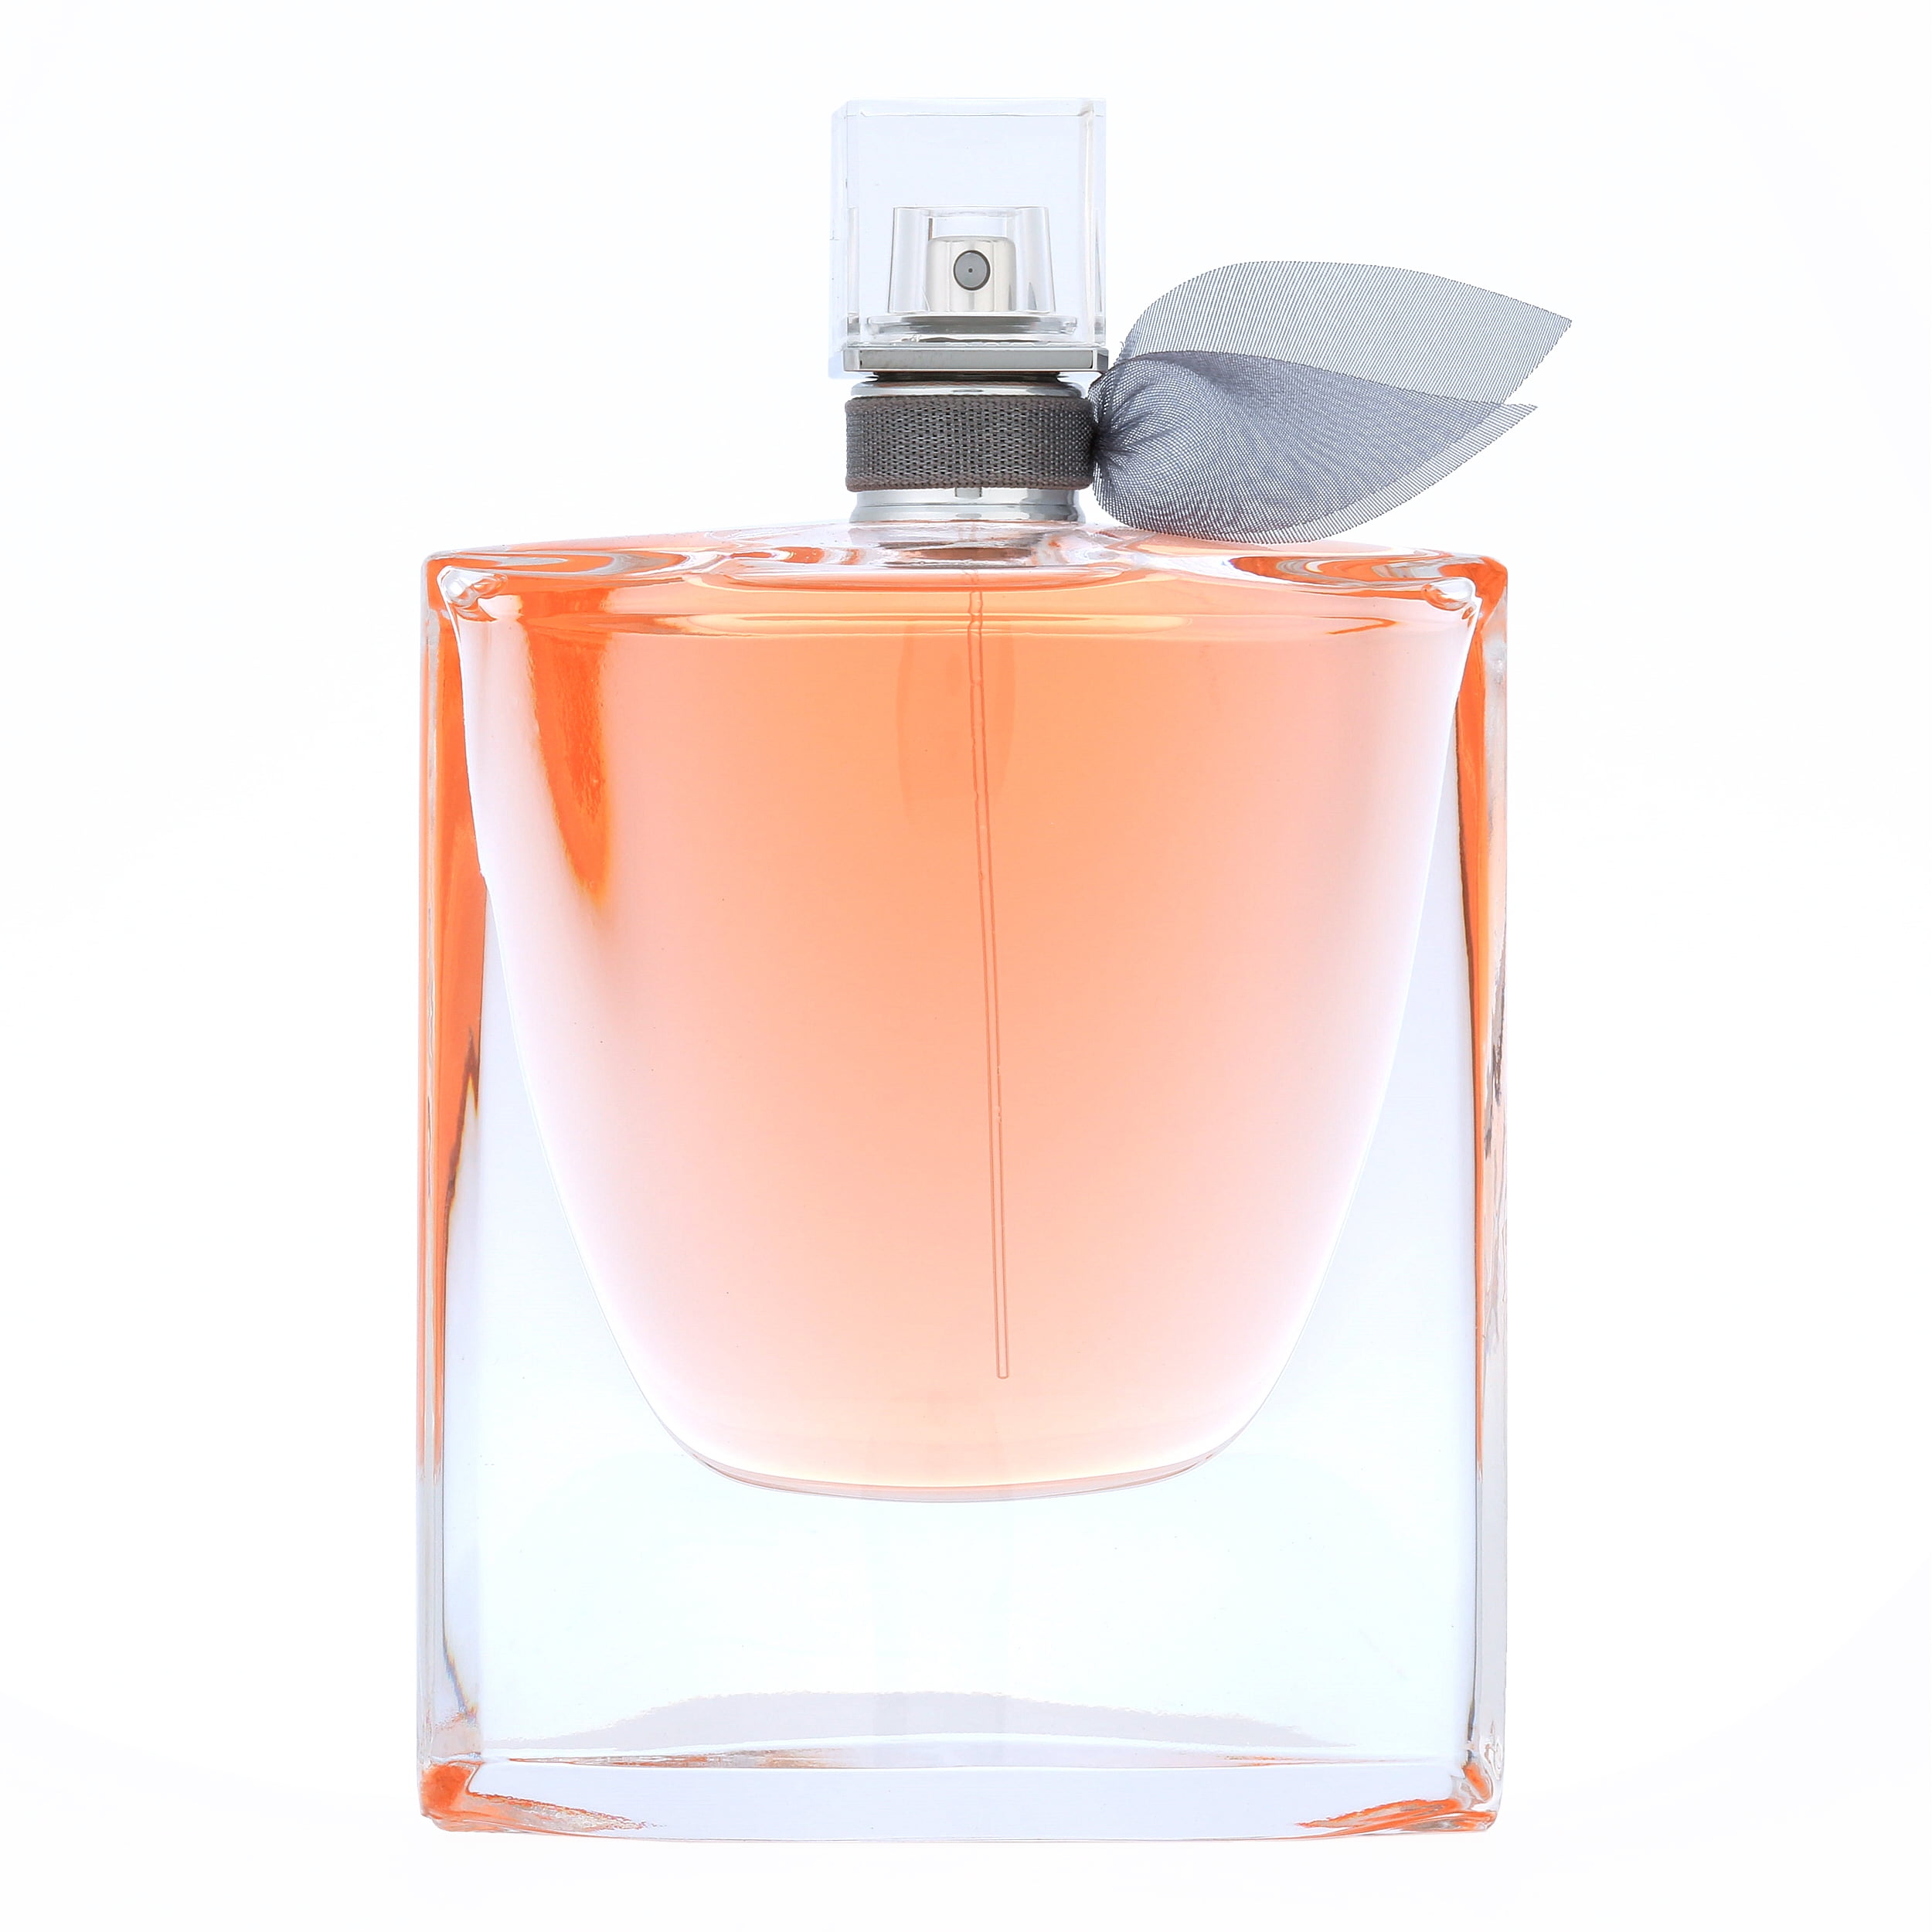 Lancome La Vie Est Belle Eau De Parfum, Perfume for Women, 1 Oz -  Walmart.com